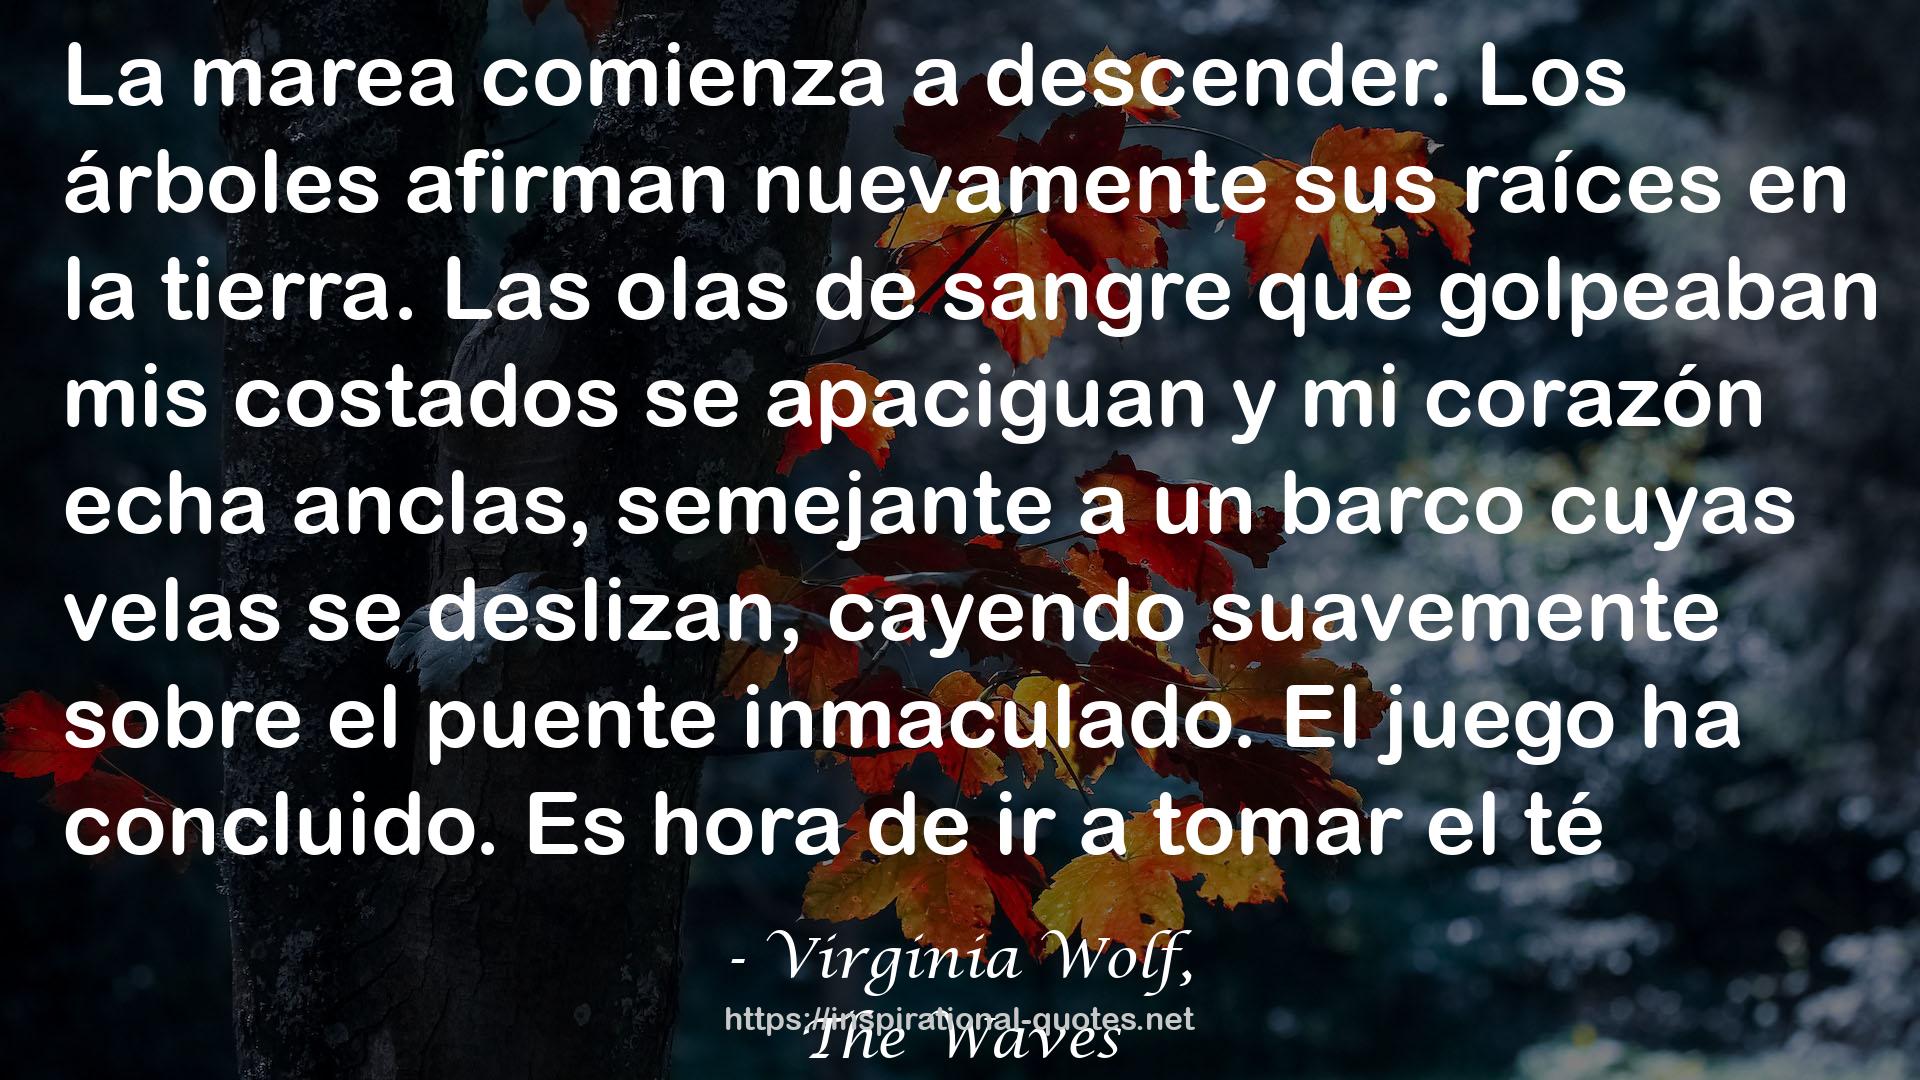 Virginia Wolf, QUOTES